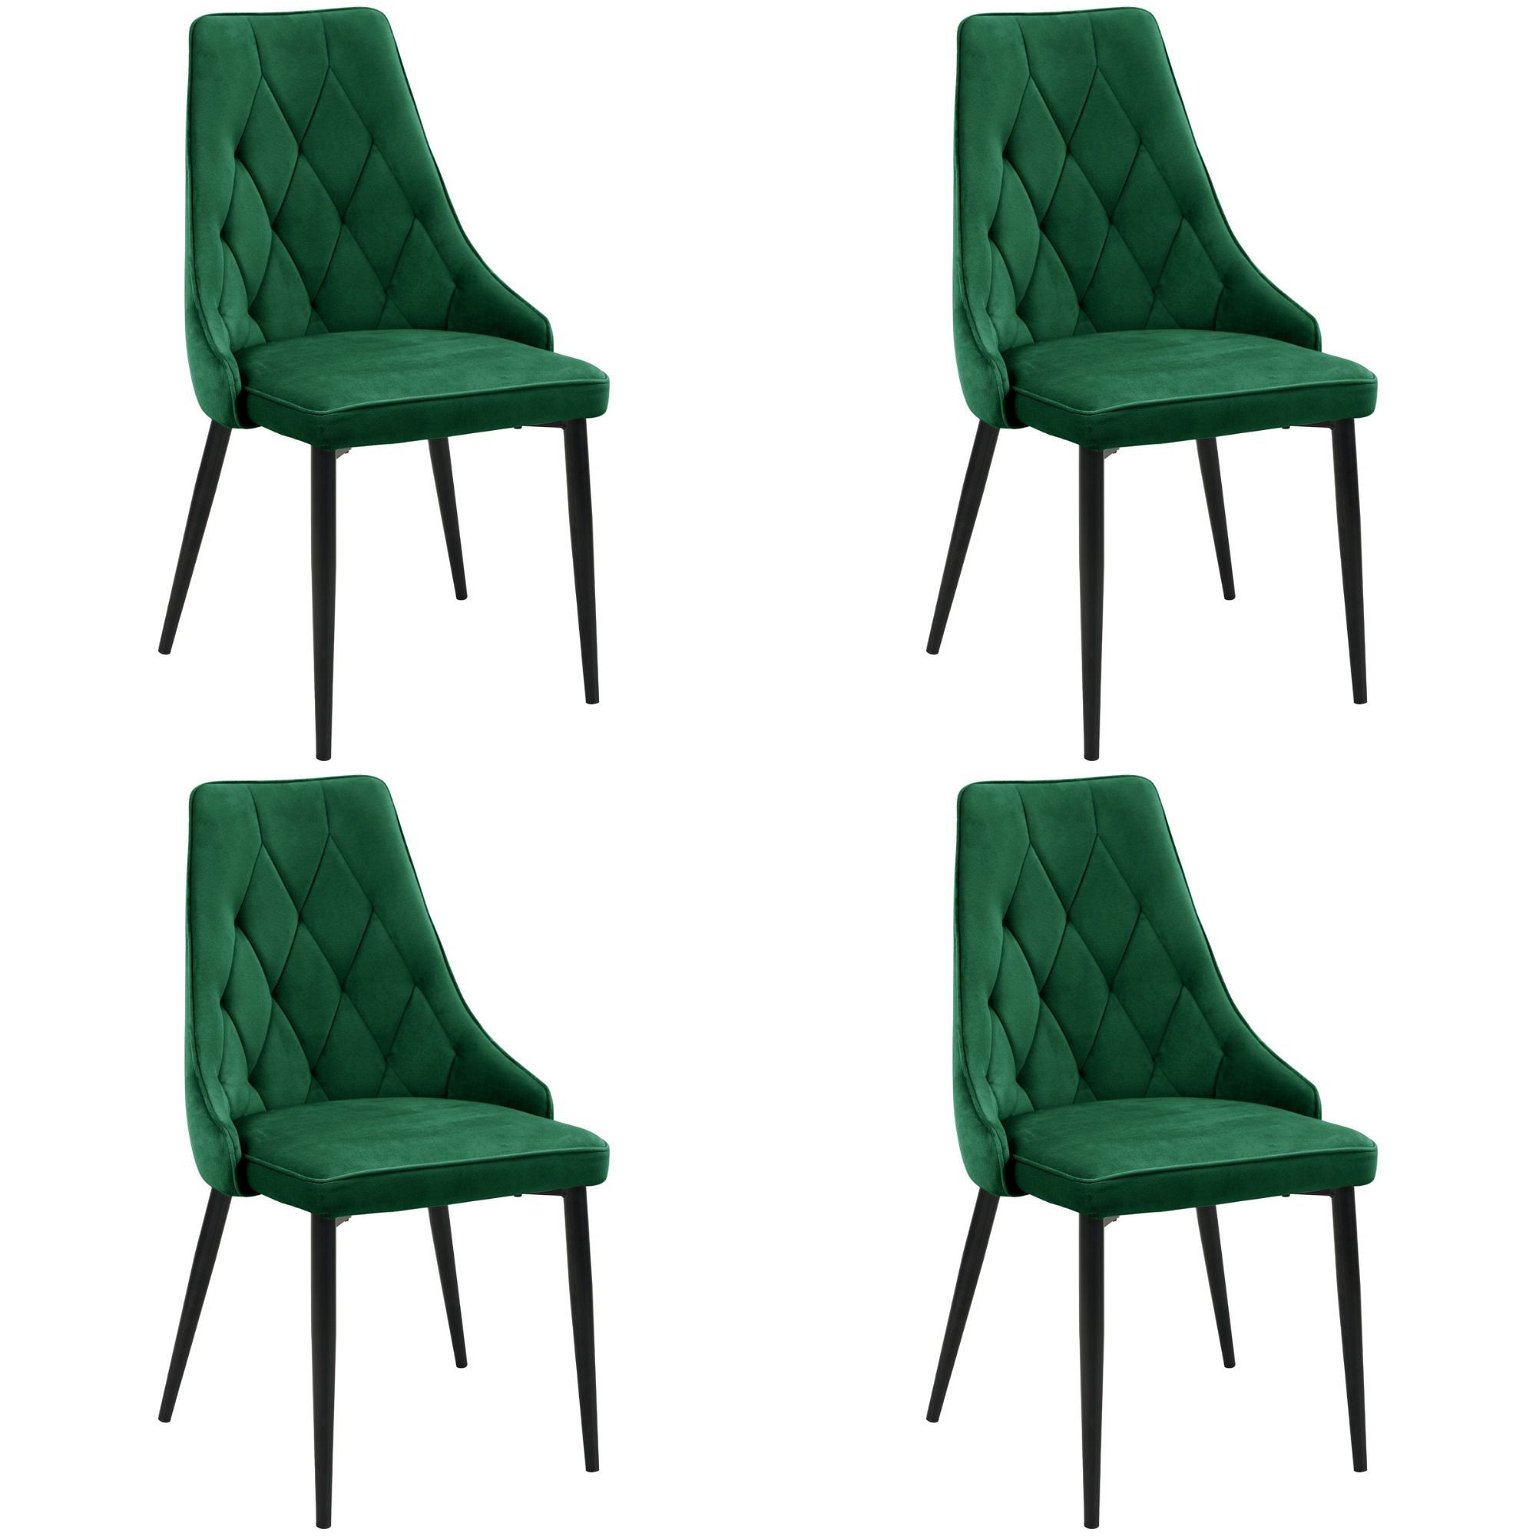 4-ių kėdžių komplektas SJ.054, žalia - 1